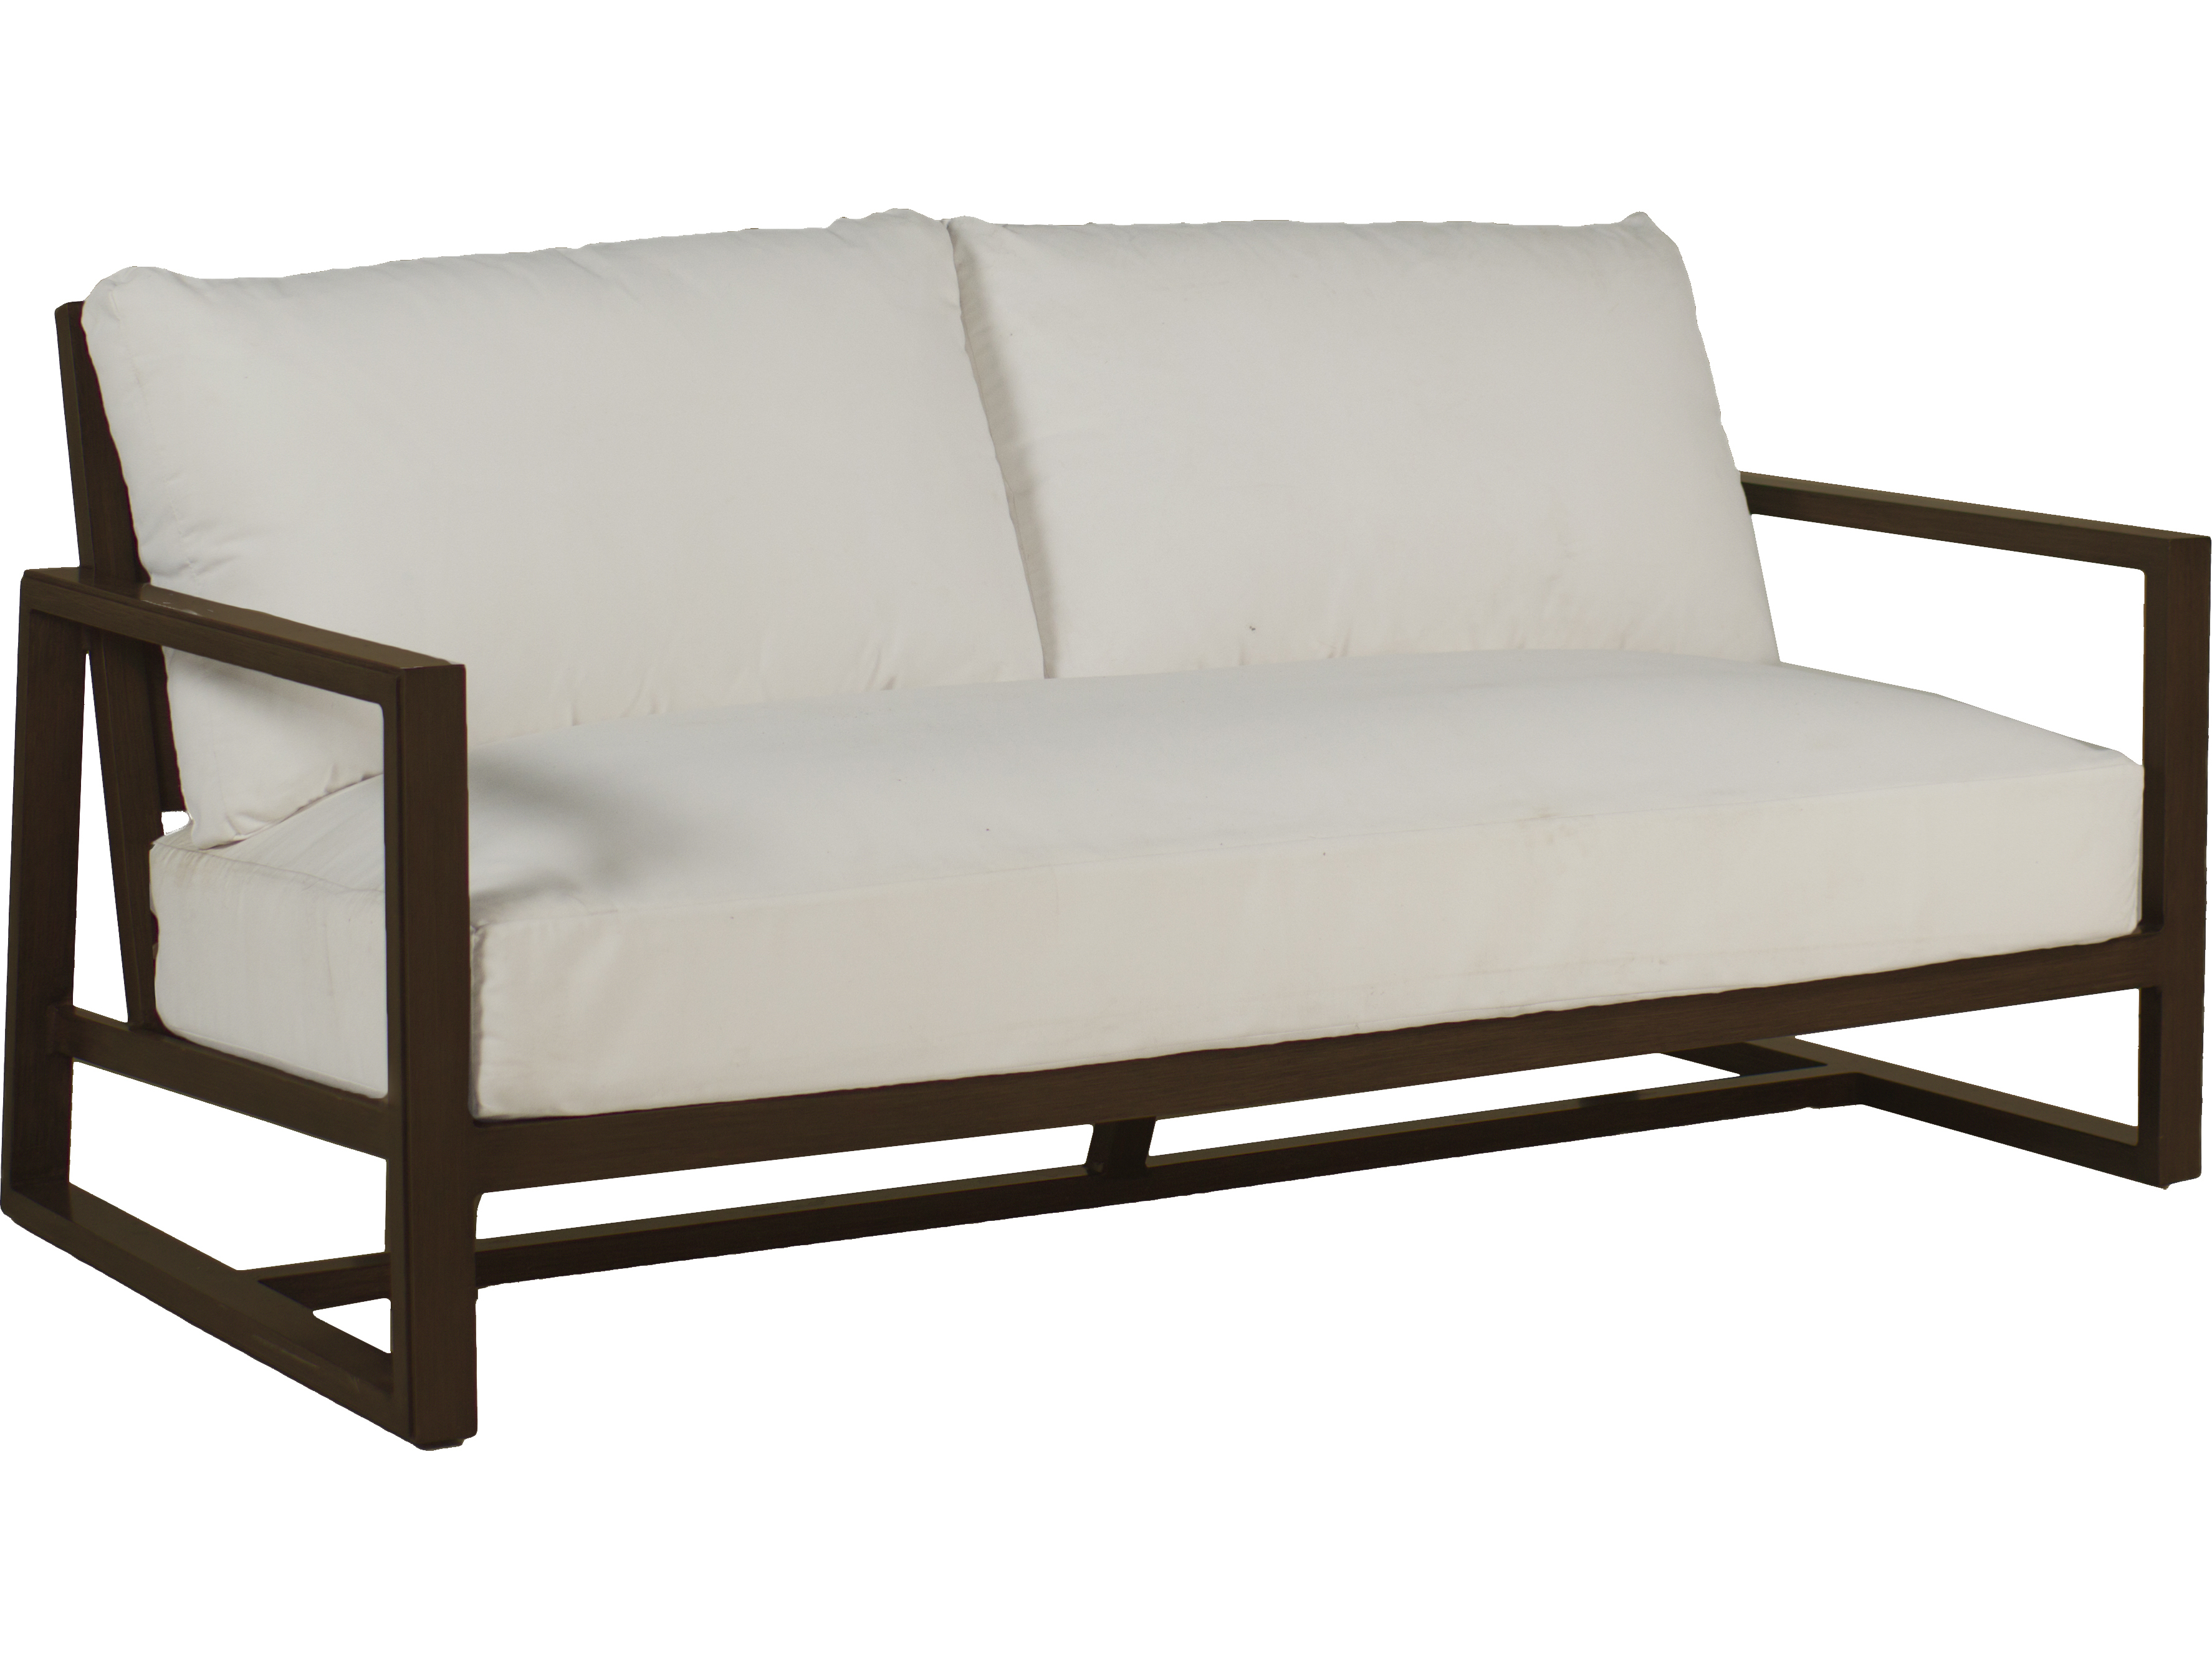 Summer Classics Avondale Aluminum Sofa, Summer Classics Outdoor Furniture Replacement Cushions